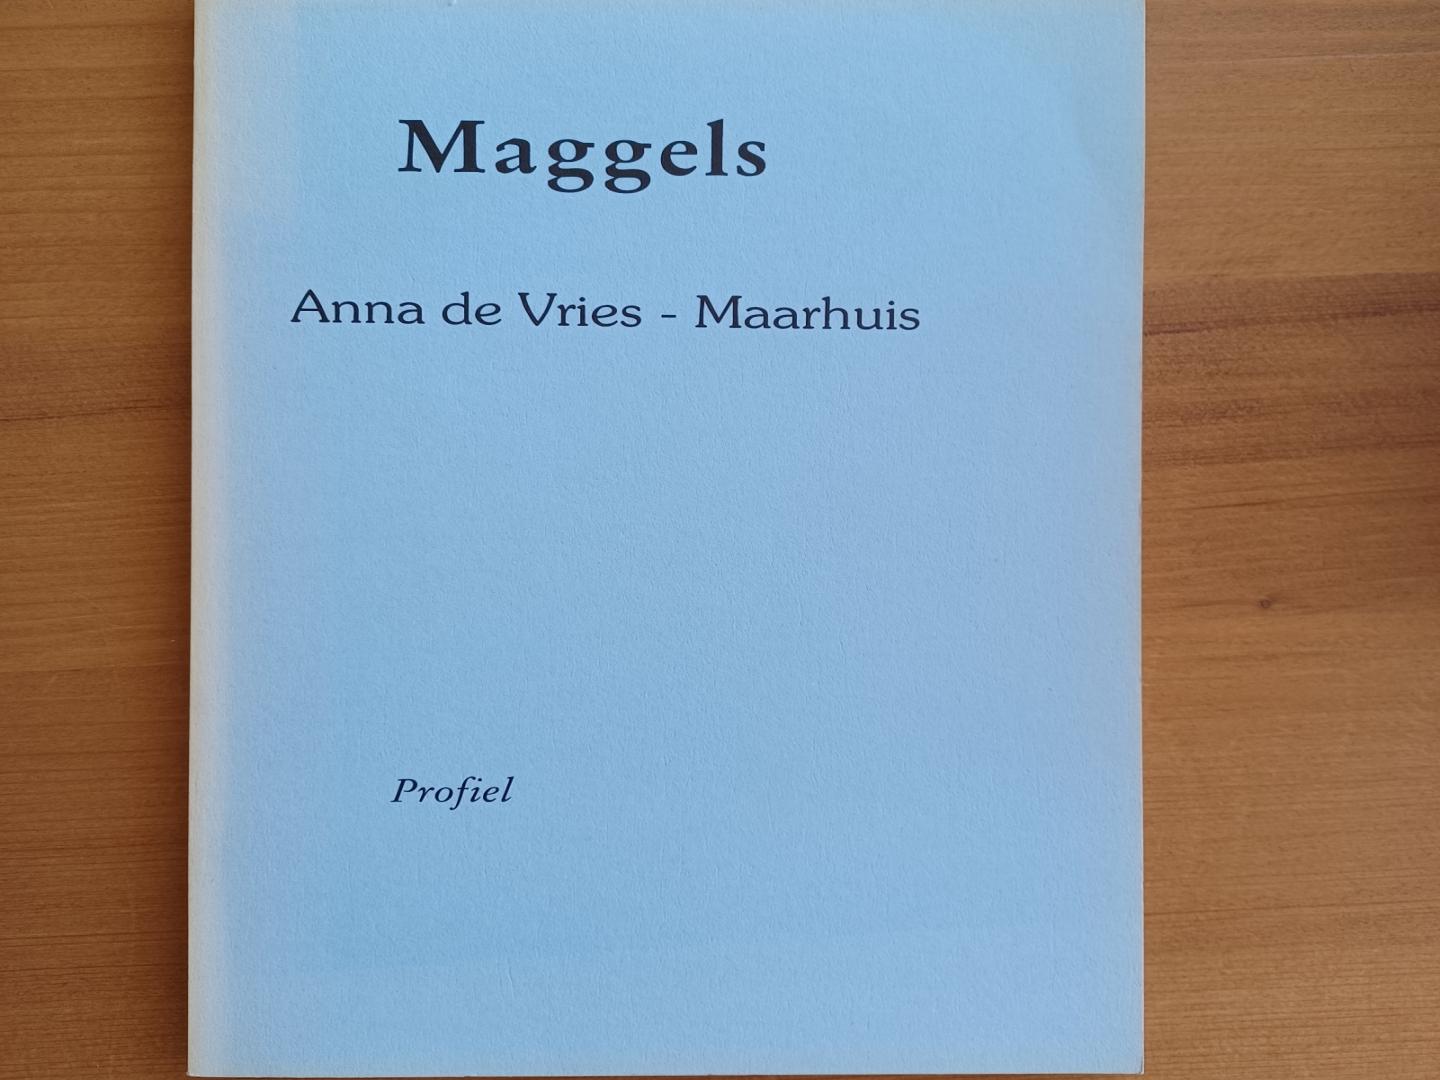 Vries-Maarhuis, Anna de - Maggels